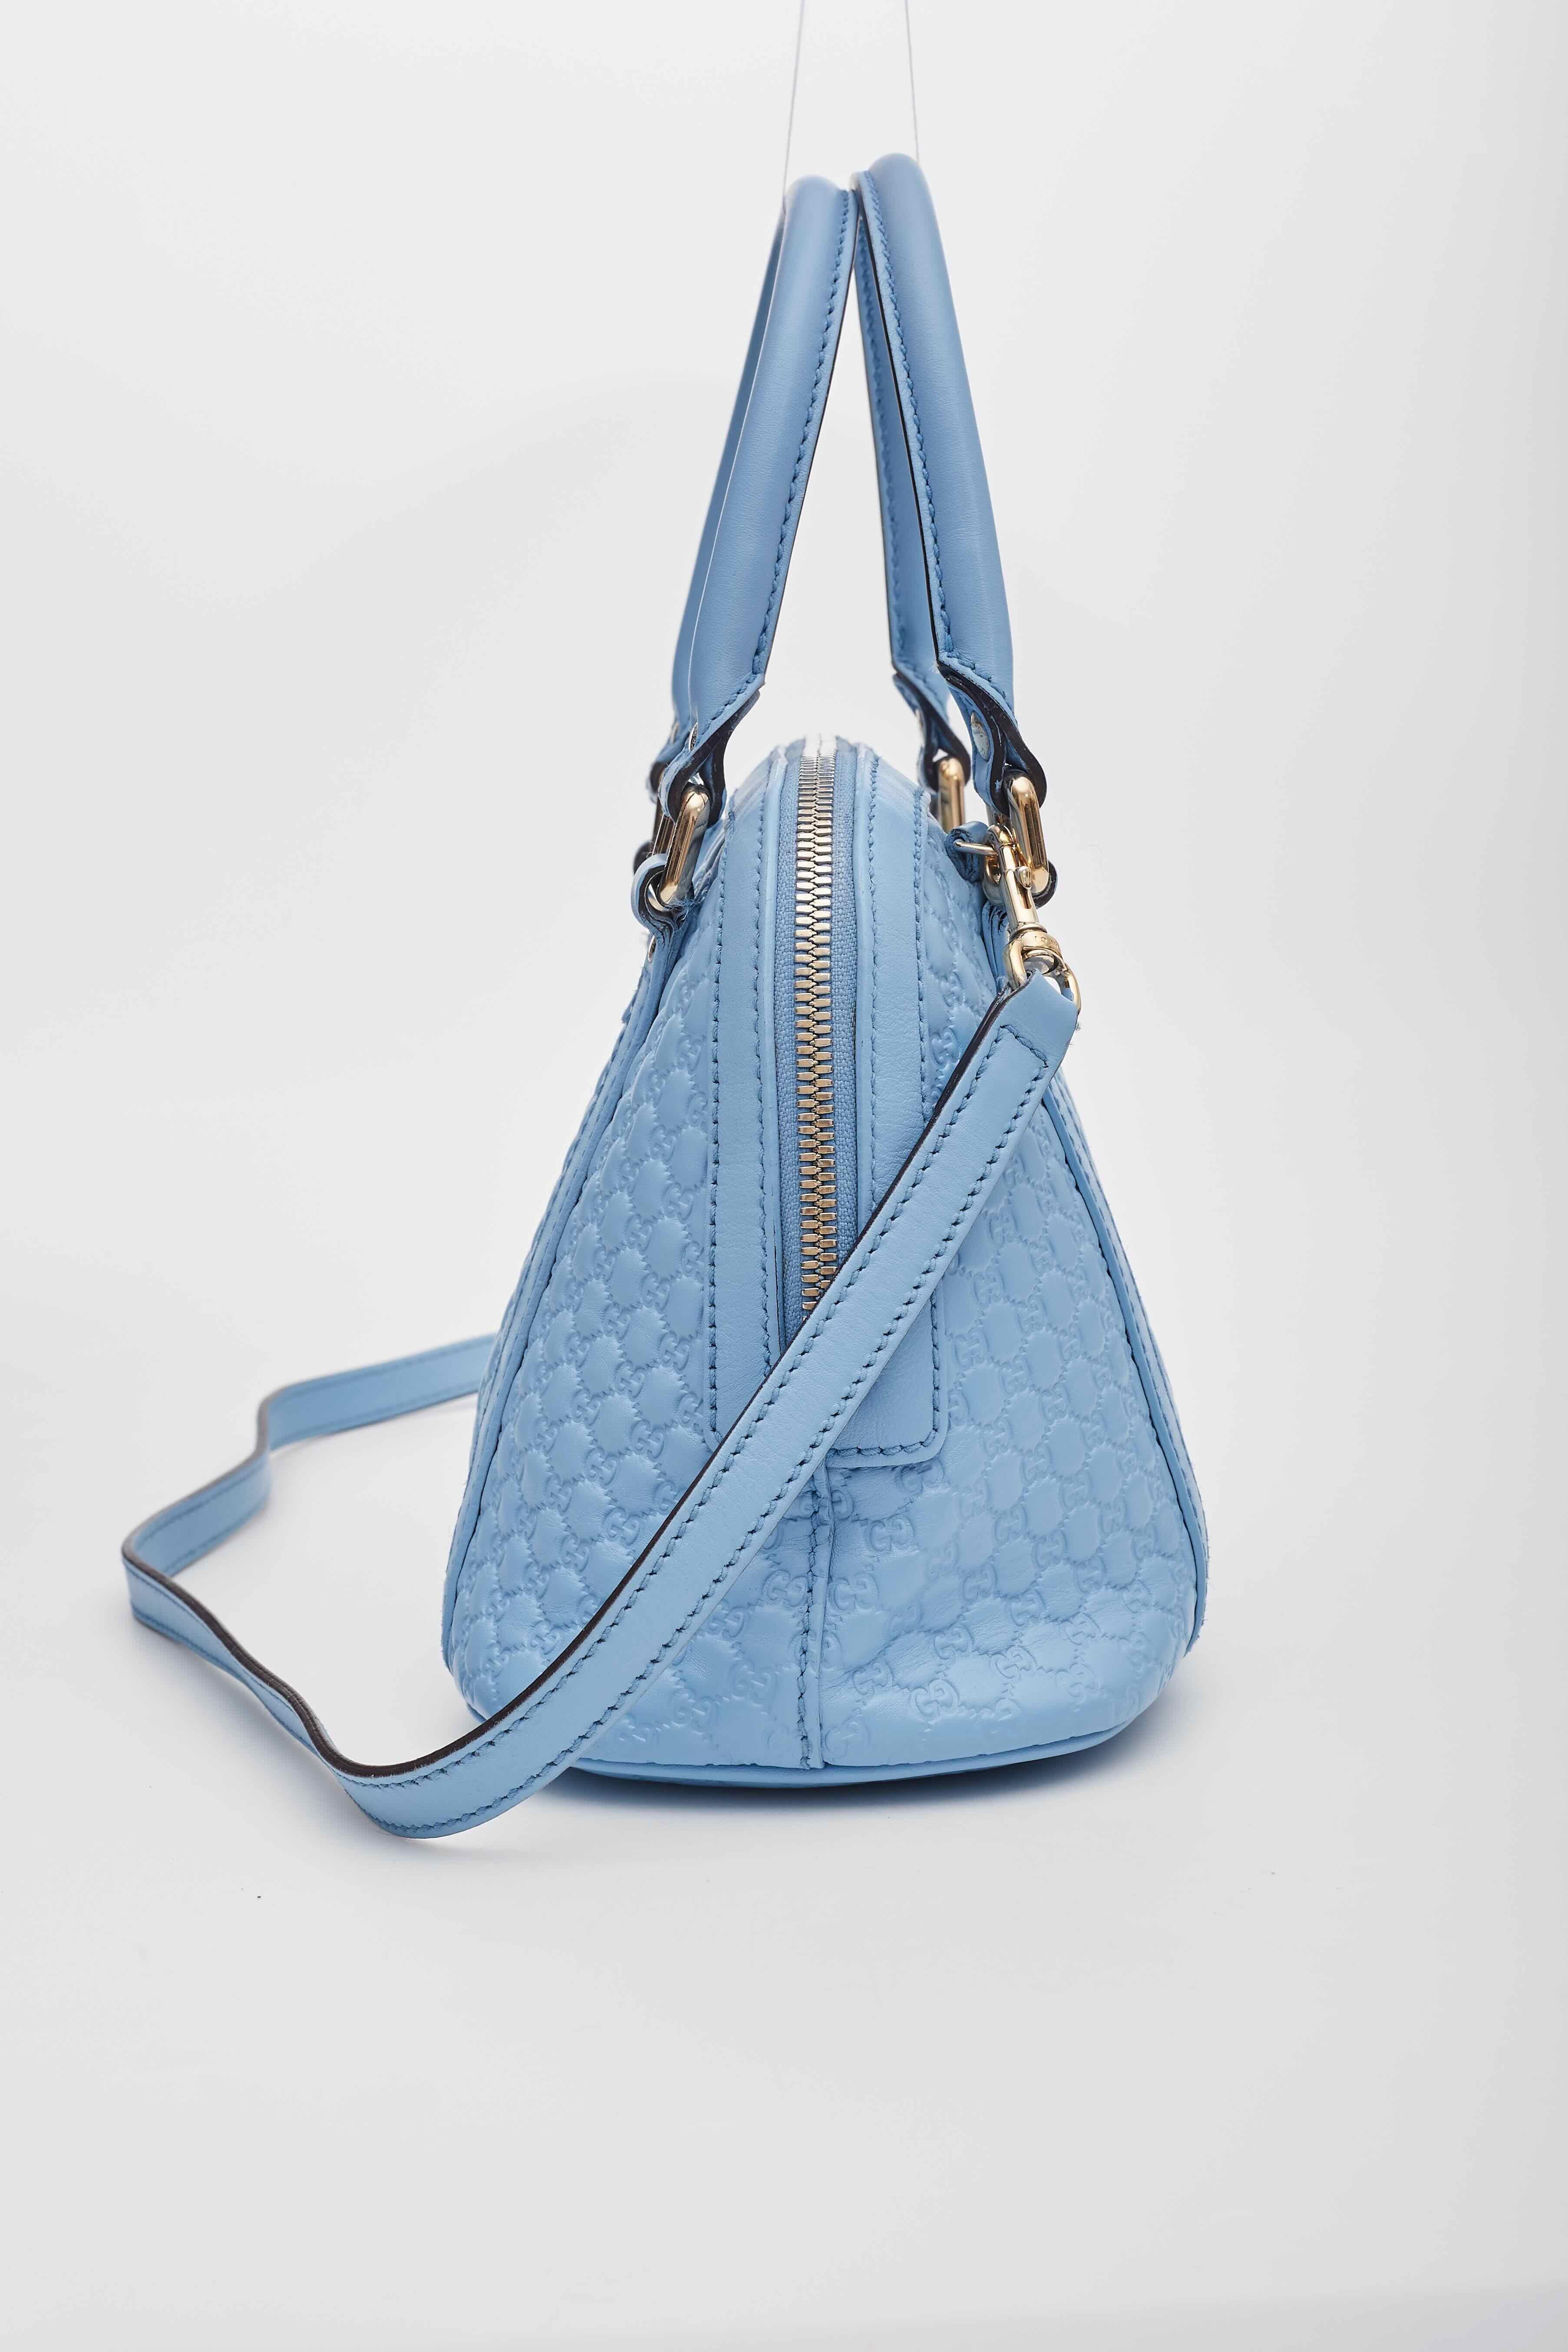 Gucci Baby Blue Microissima Mini Dome Bag For Sale 2